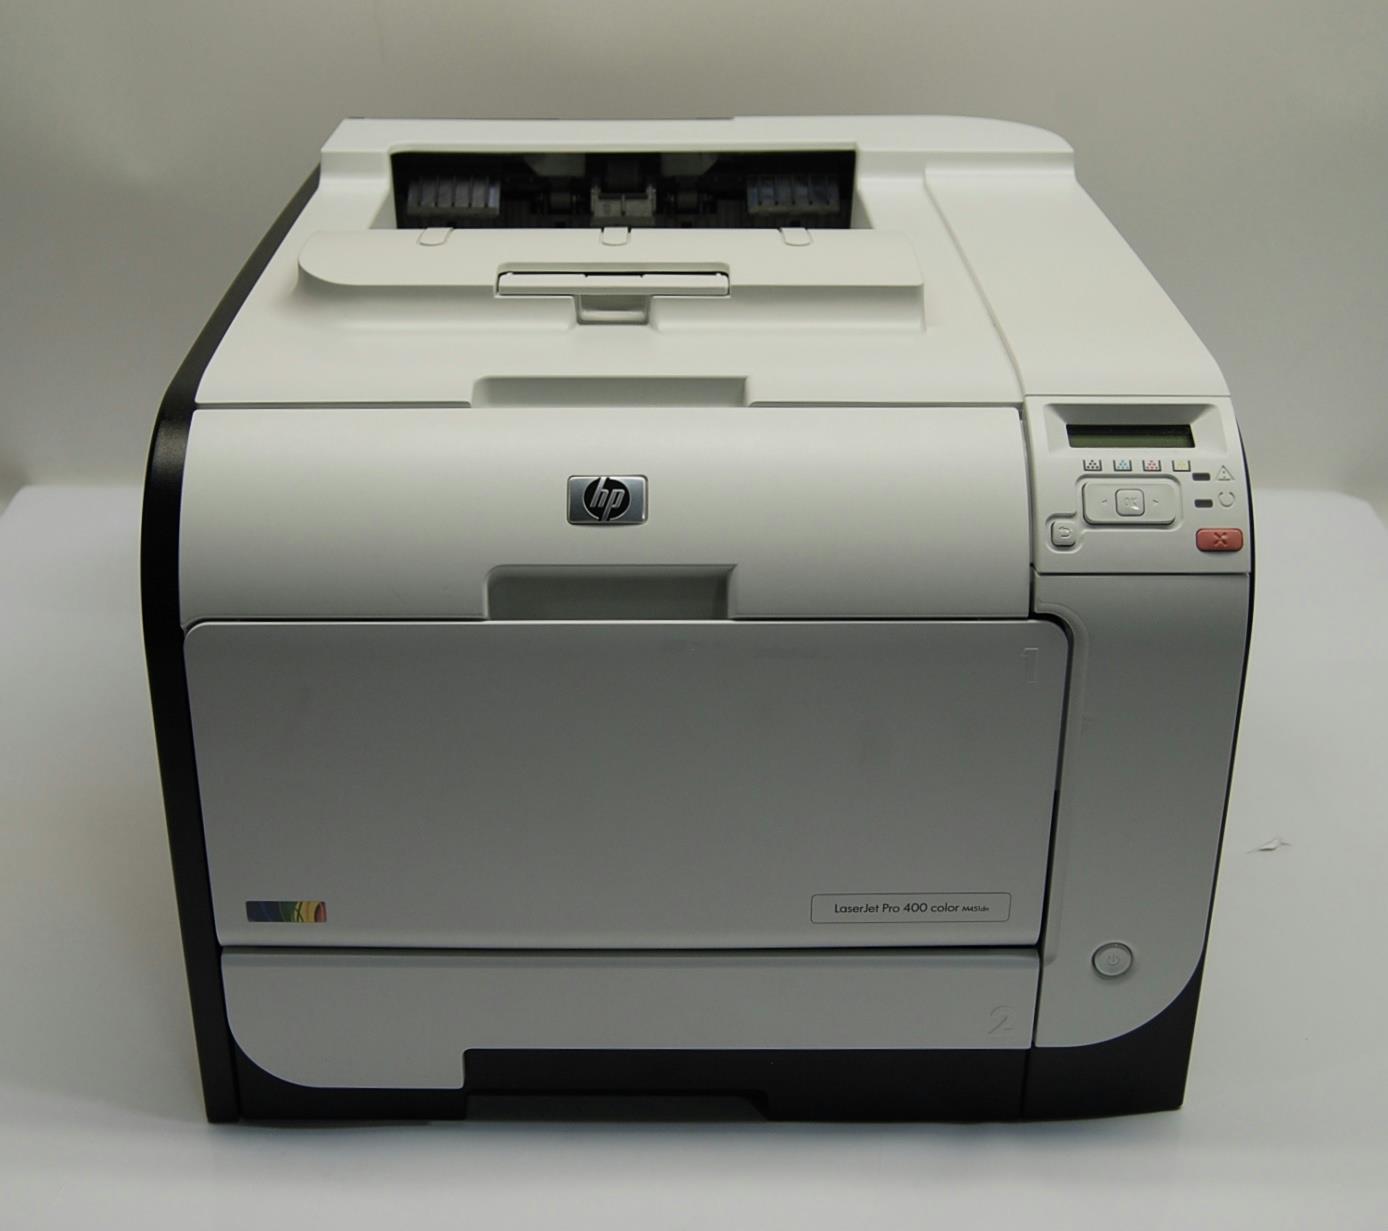 Hp Laserjet Pro 400 M451dn Color Laser Printer Ce957a For Parts 800115491 886111731602 Ebay